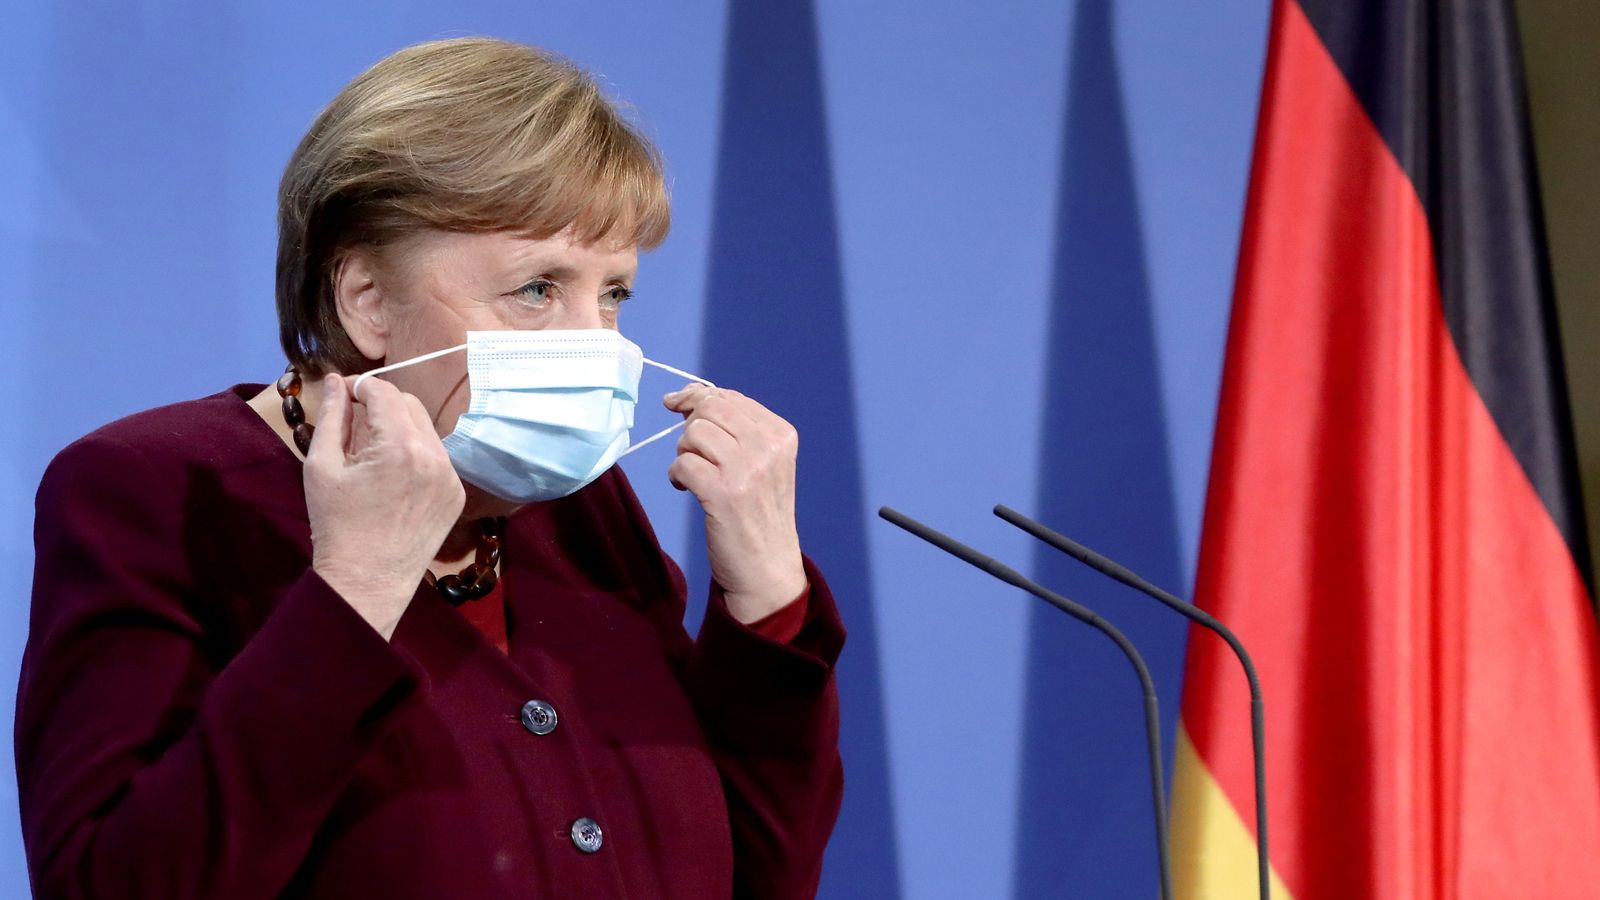 COVID-19: Deutschland lockert die Coronavirus-Beschränkungen für britische Reisende nach dem Treffen von Merkel und Johnson |  Weltnachrichten